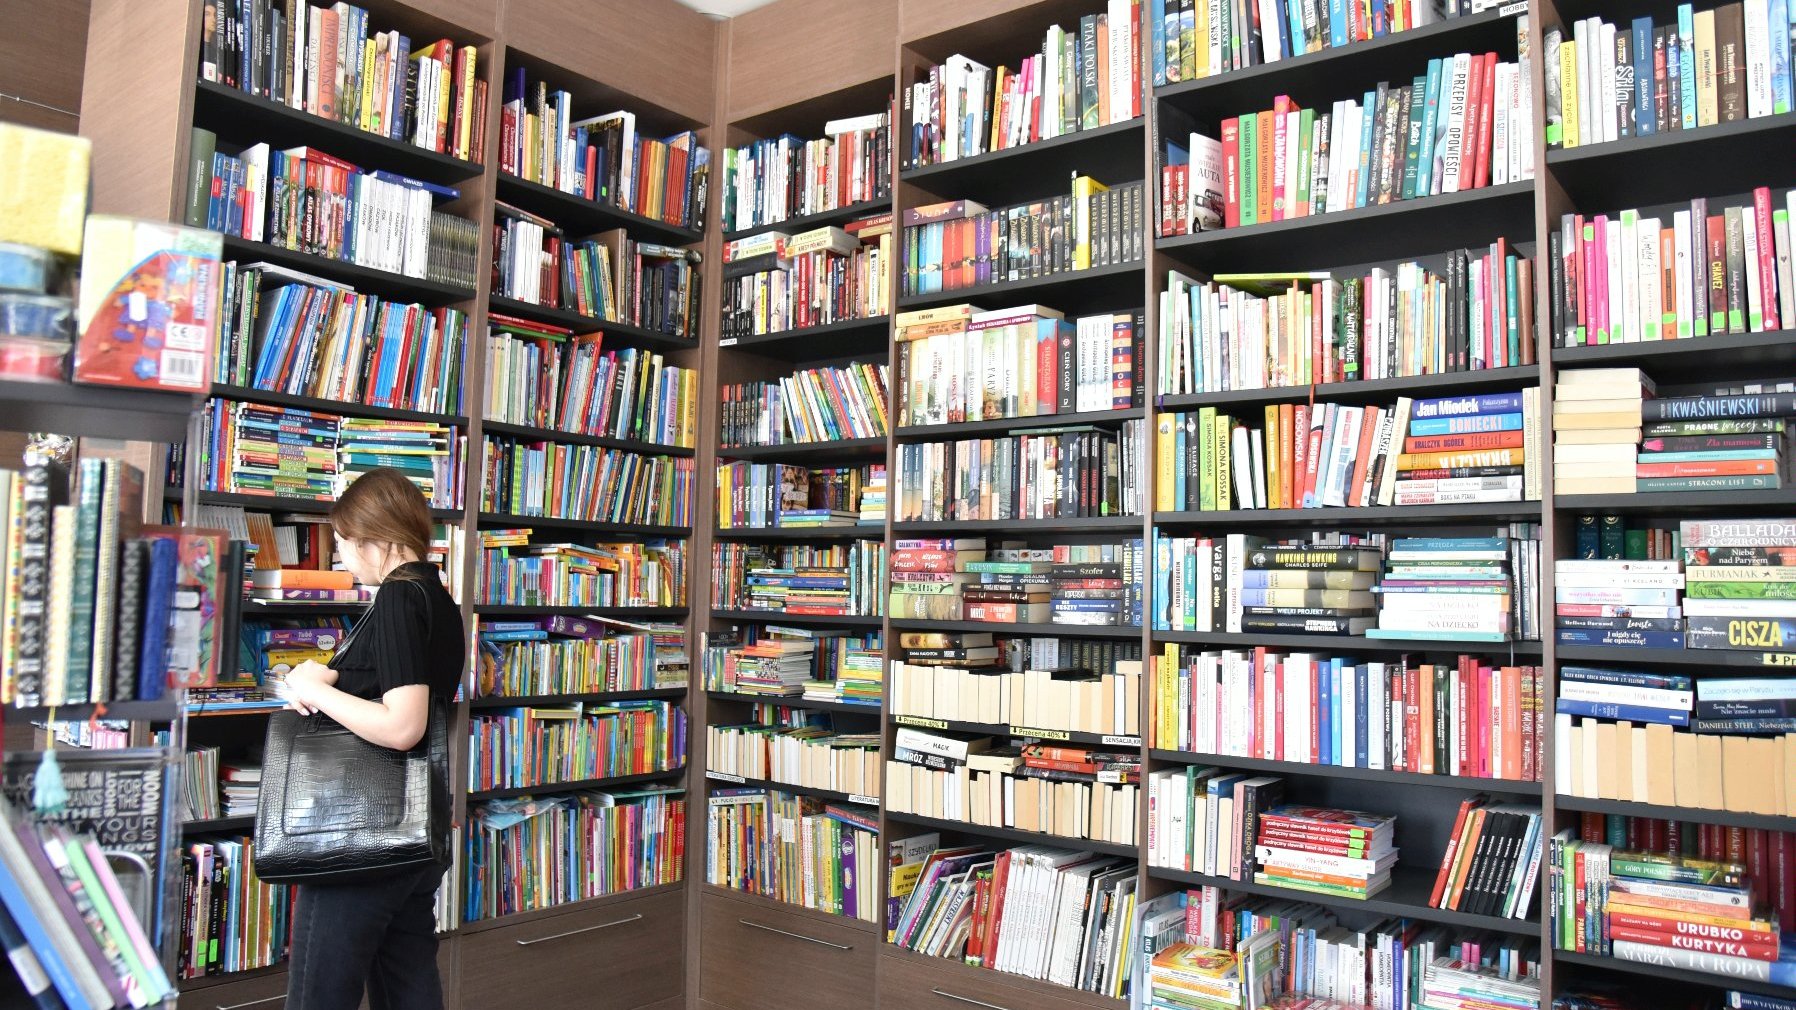 Zdjęcie przedstawia dziewczynę oglądającą książki stojące na półce.